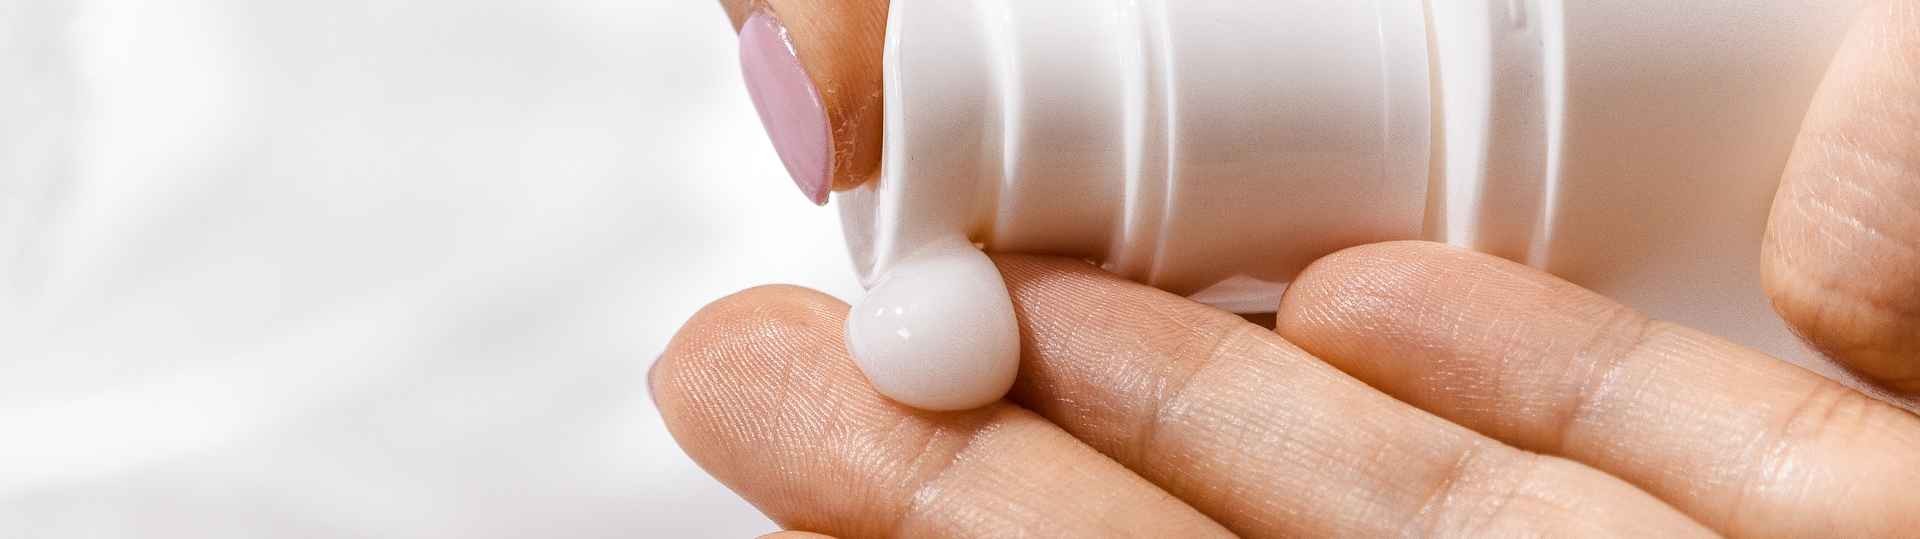 Una crema para la dermatitis atópica consigue reducir las lesiones cutáneas de un linfoma